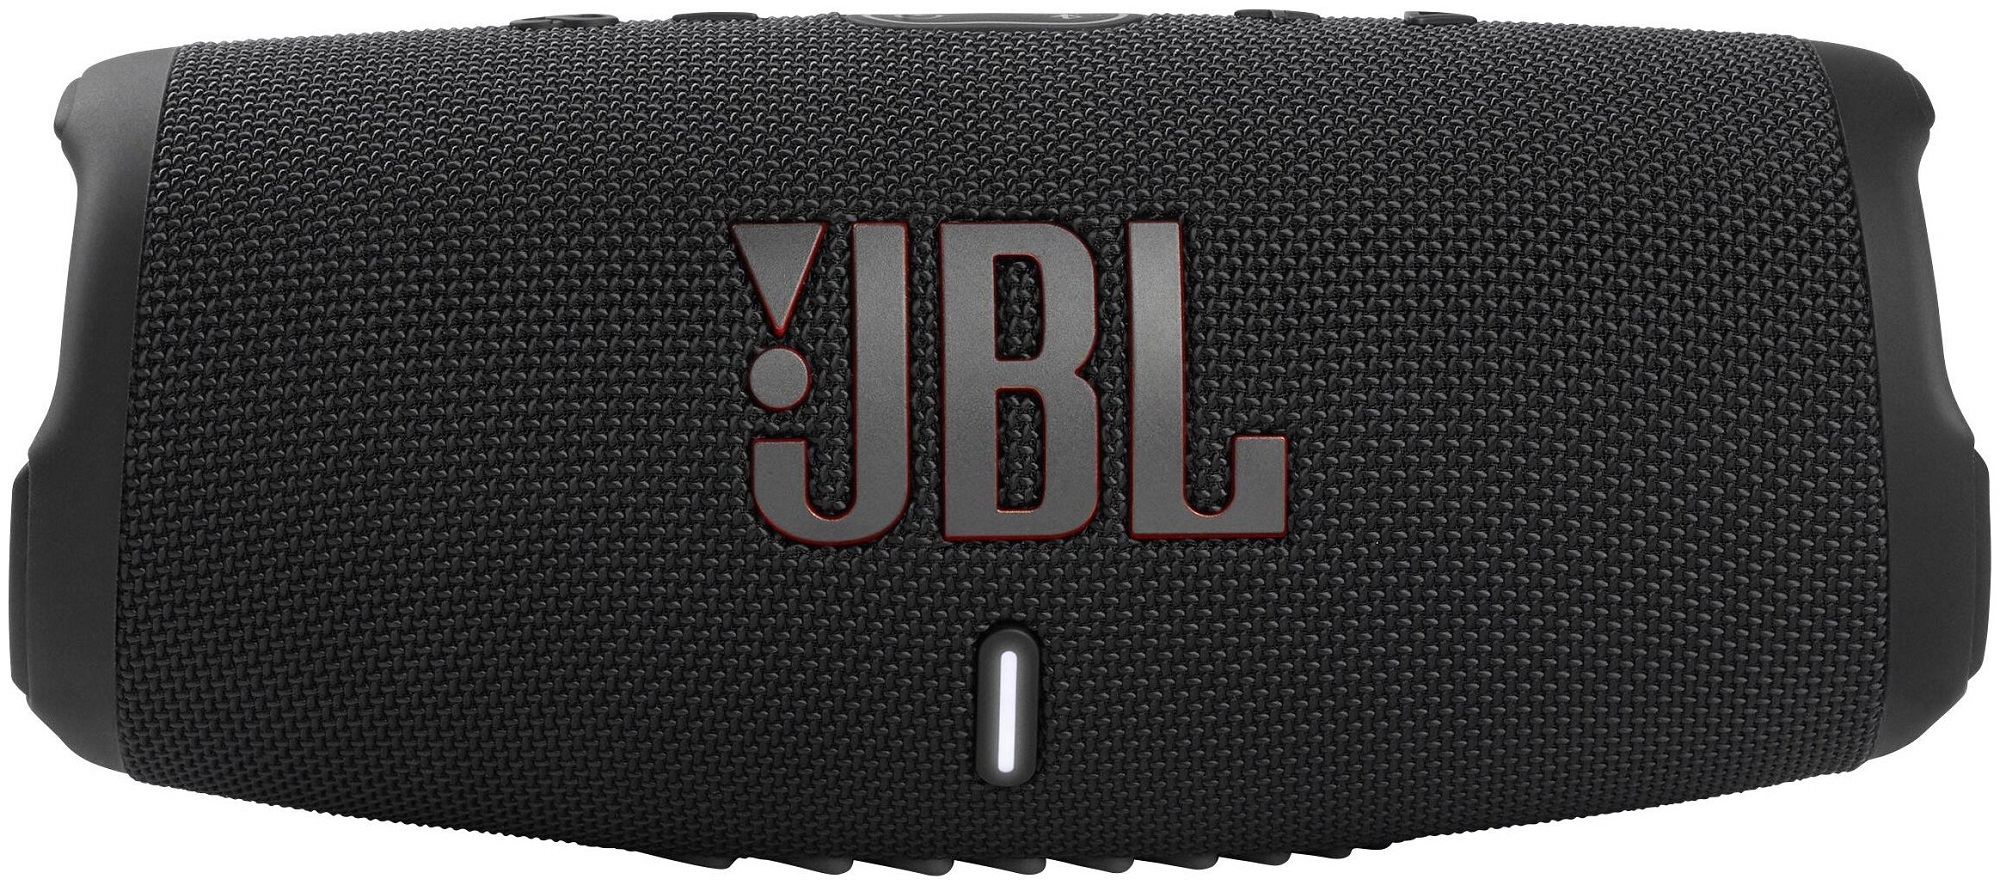 JBL Портативная акустика Charge 5 (уценка)